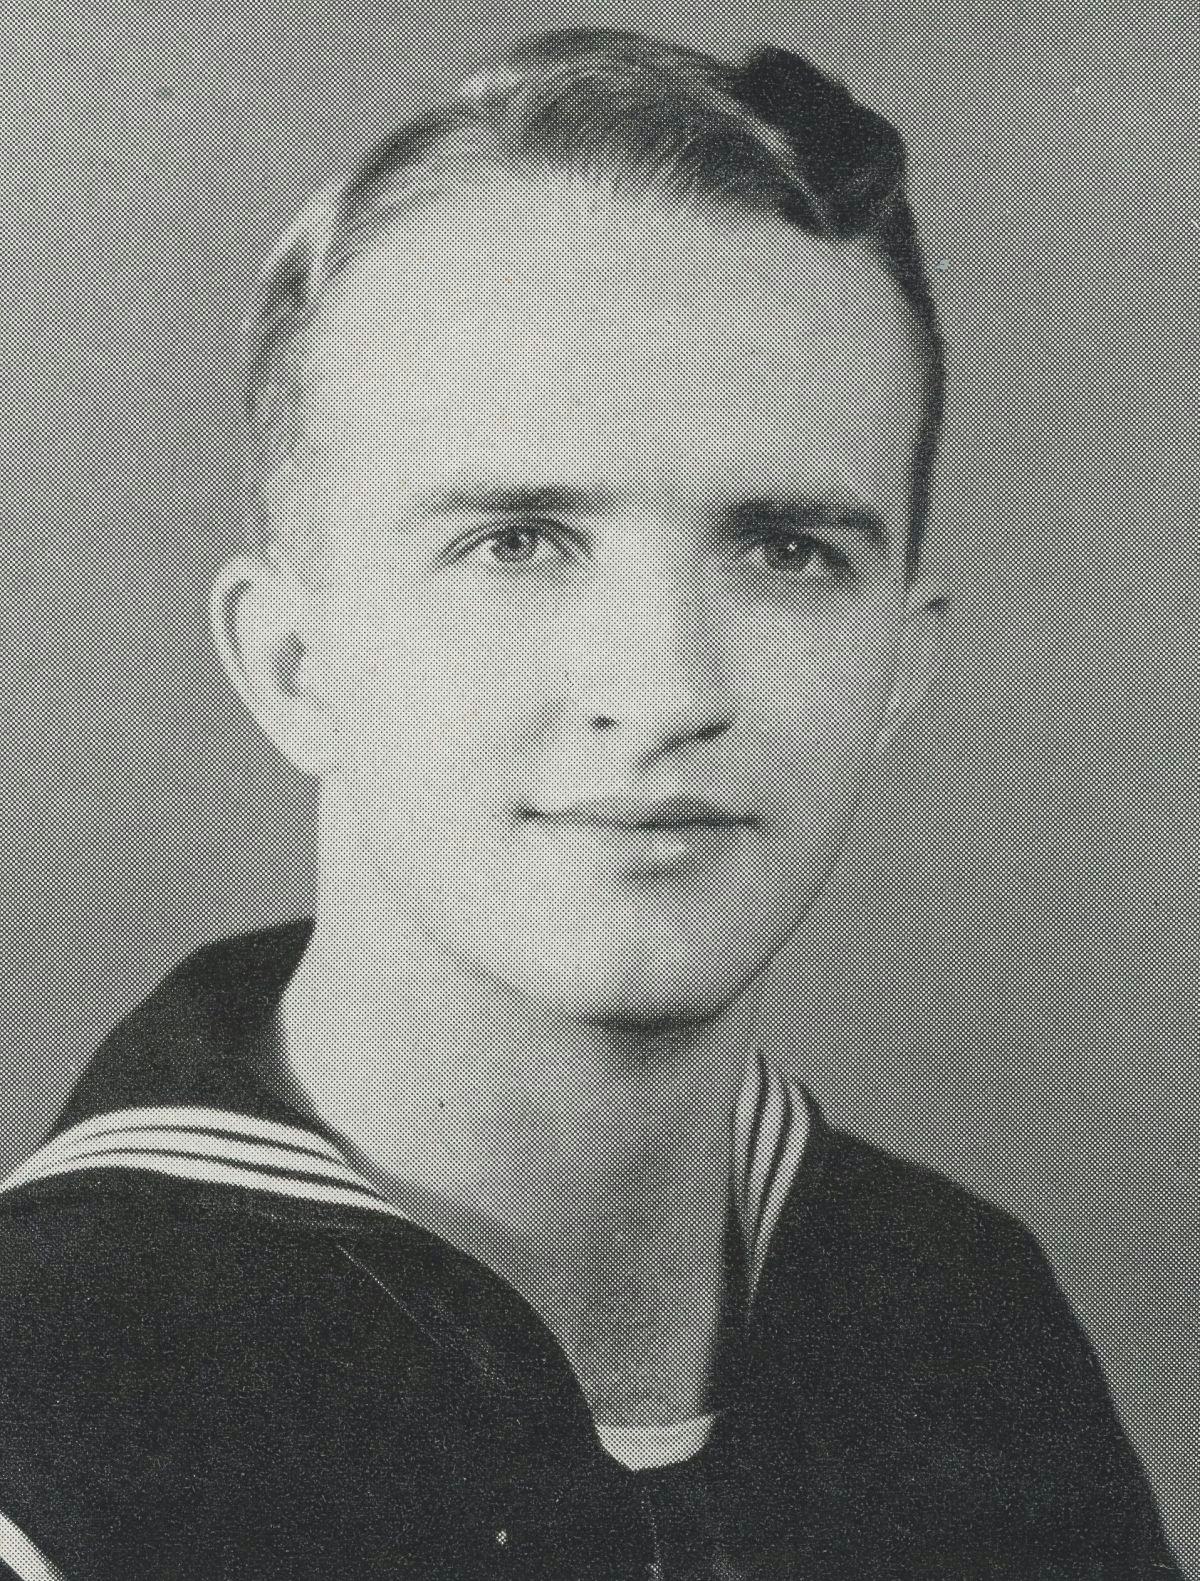 Yearbook portrait of John Schneider in Navy uniform from mid-1940s.